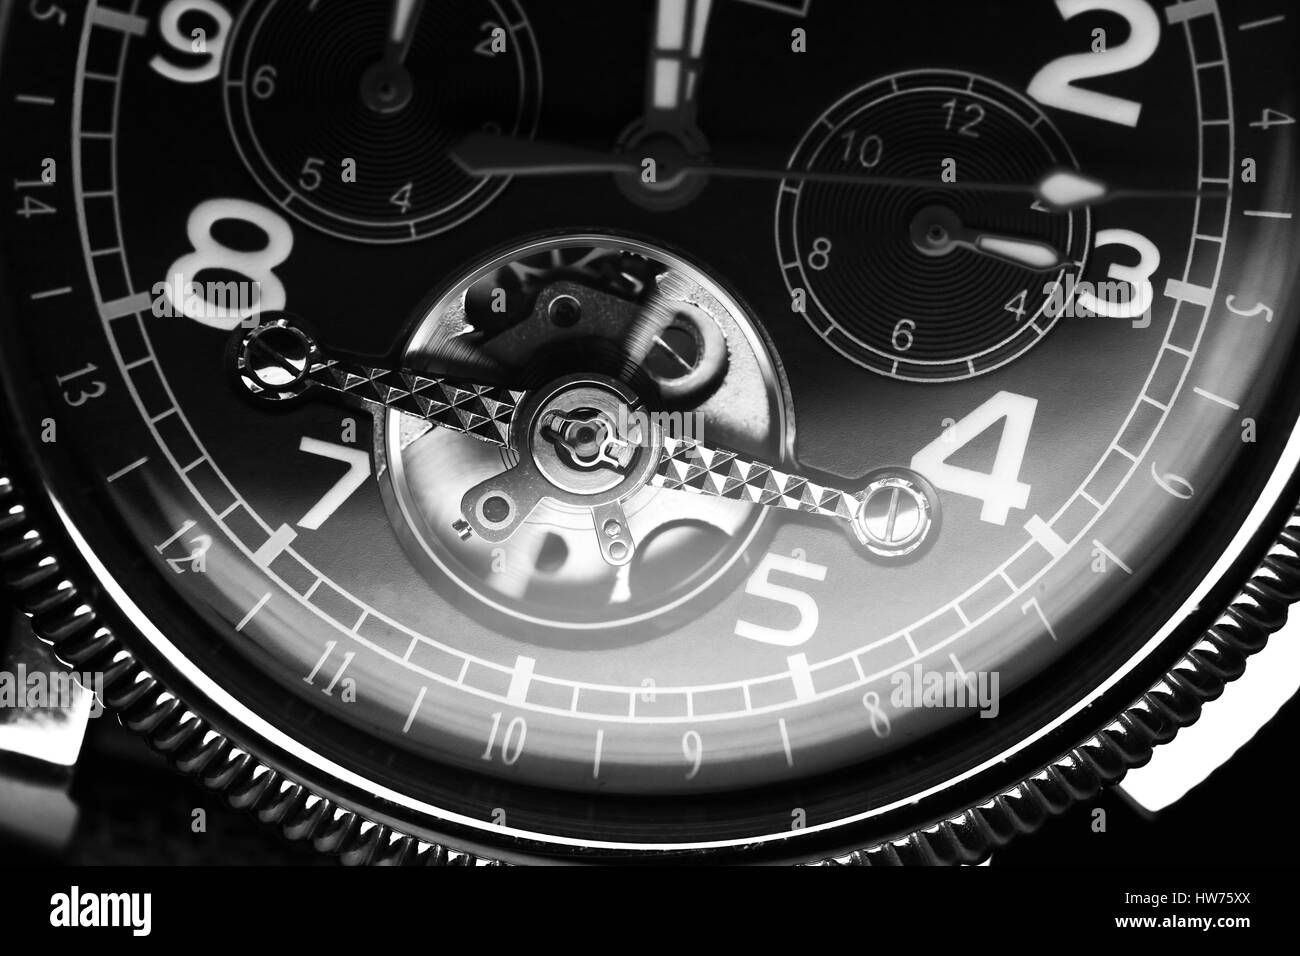 Mechanische Luxus Armbanduhr mit automatischem Aufzug, Nahaufnahme Fragment von Deal, schwarz / weiß Stockfoto